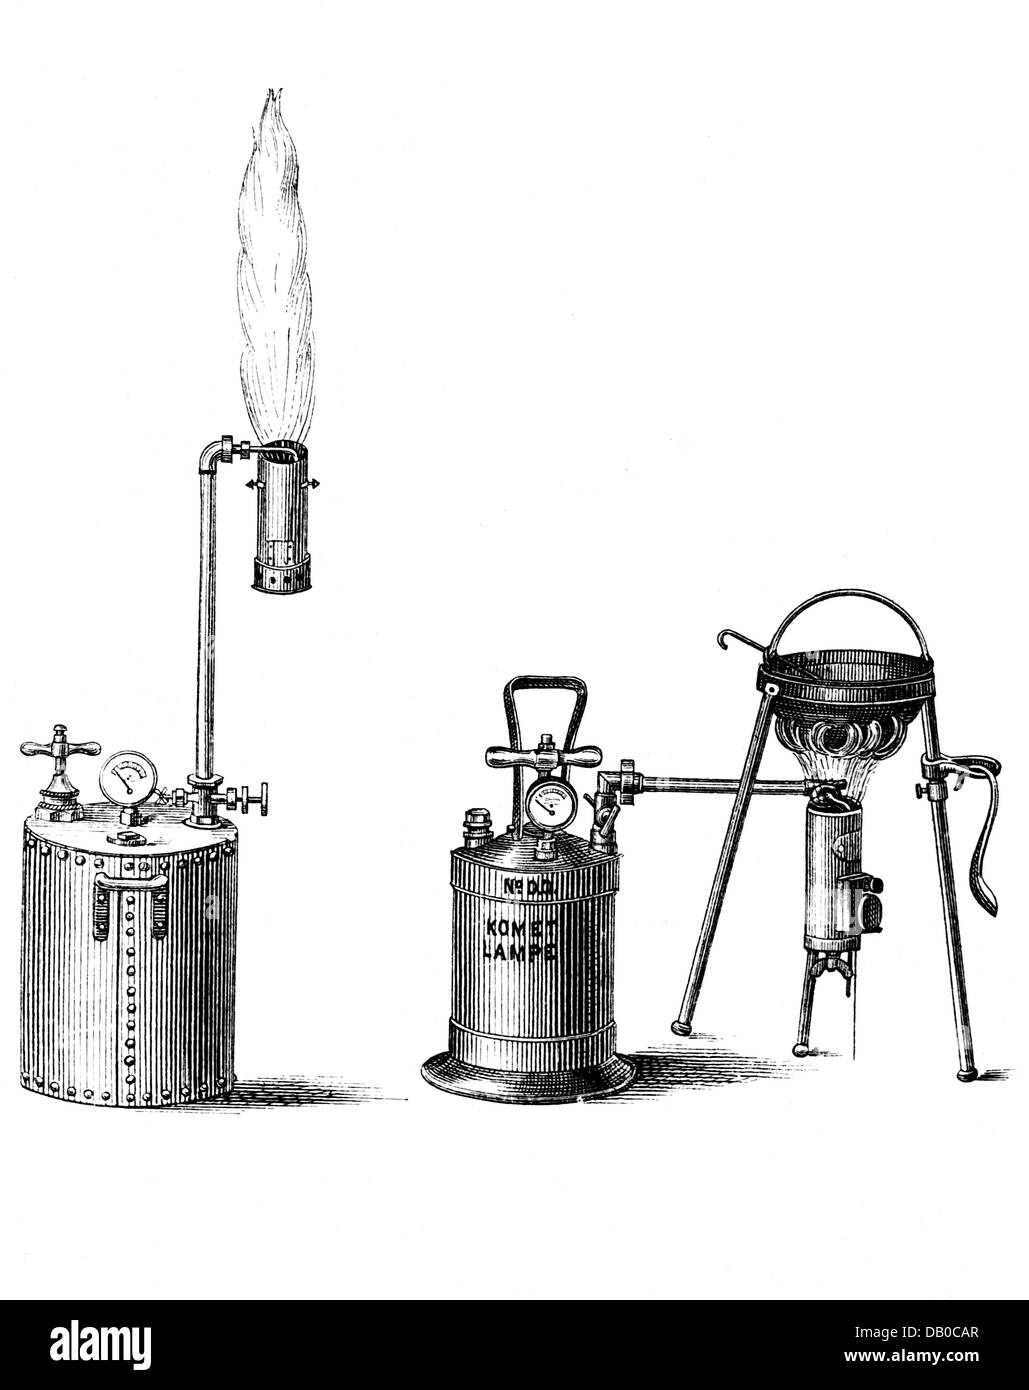 Energia, petrolio, 'Kometfackel' (torcia cometa), per la cottura e il riscaldamento di vapore utilizzabile, di H. Meihack, Amburgo, incisione del legno, prima del 1896, diritti-aggiuntivi-clearences-non disponibile Foto Stock